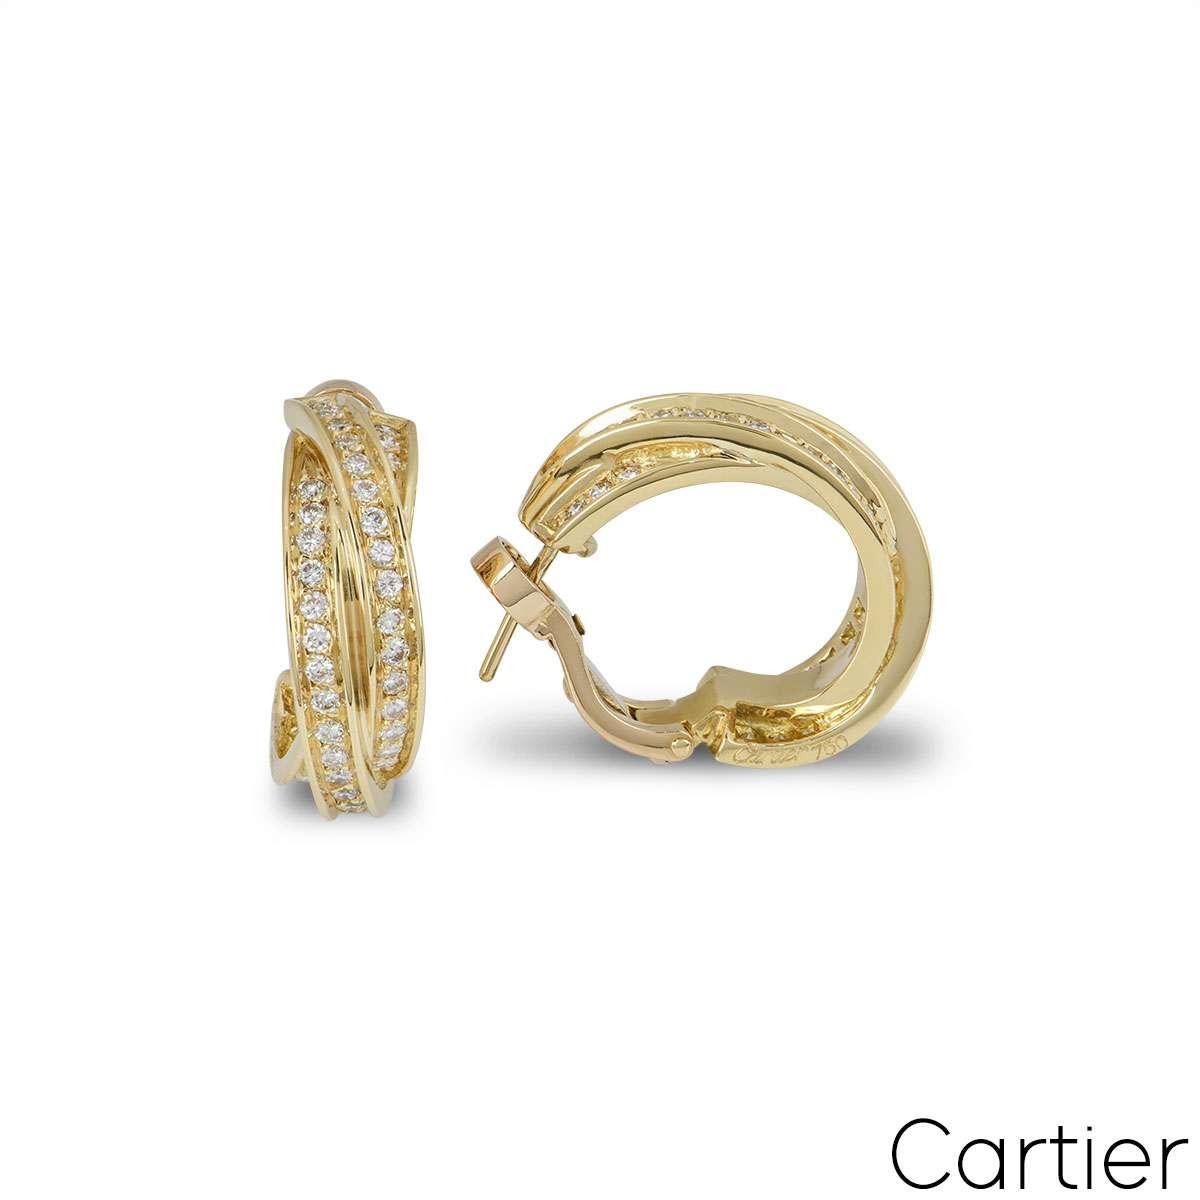 Ein funkelndes Paar Cartier-Diamantohrringe aus 18 Karat Gelbgold aus der Kollektion Trinity de Cartier. Die Ohrringe bestehen aus 3 ineinander verschlungenen Gelbgoldbändern, in die runde Diamanten im Brillantschliff eingelassen sind. Die Diamanten